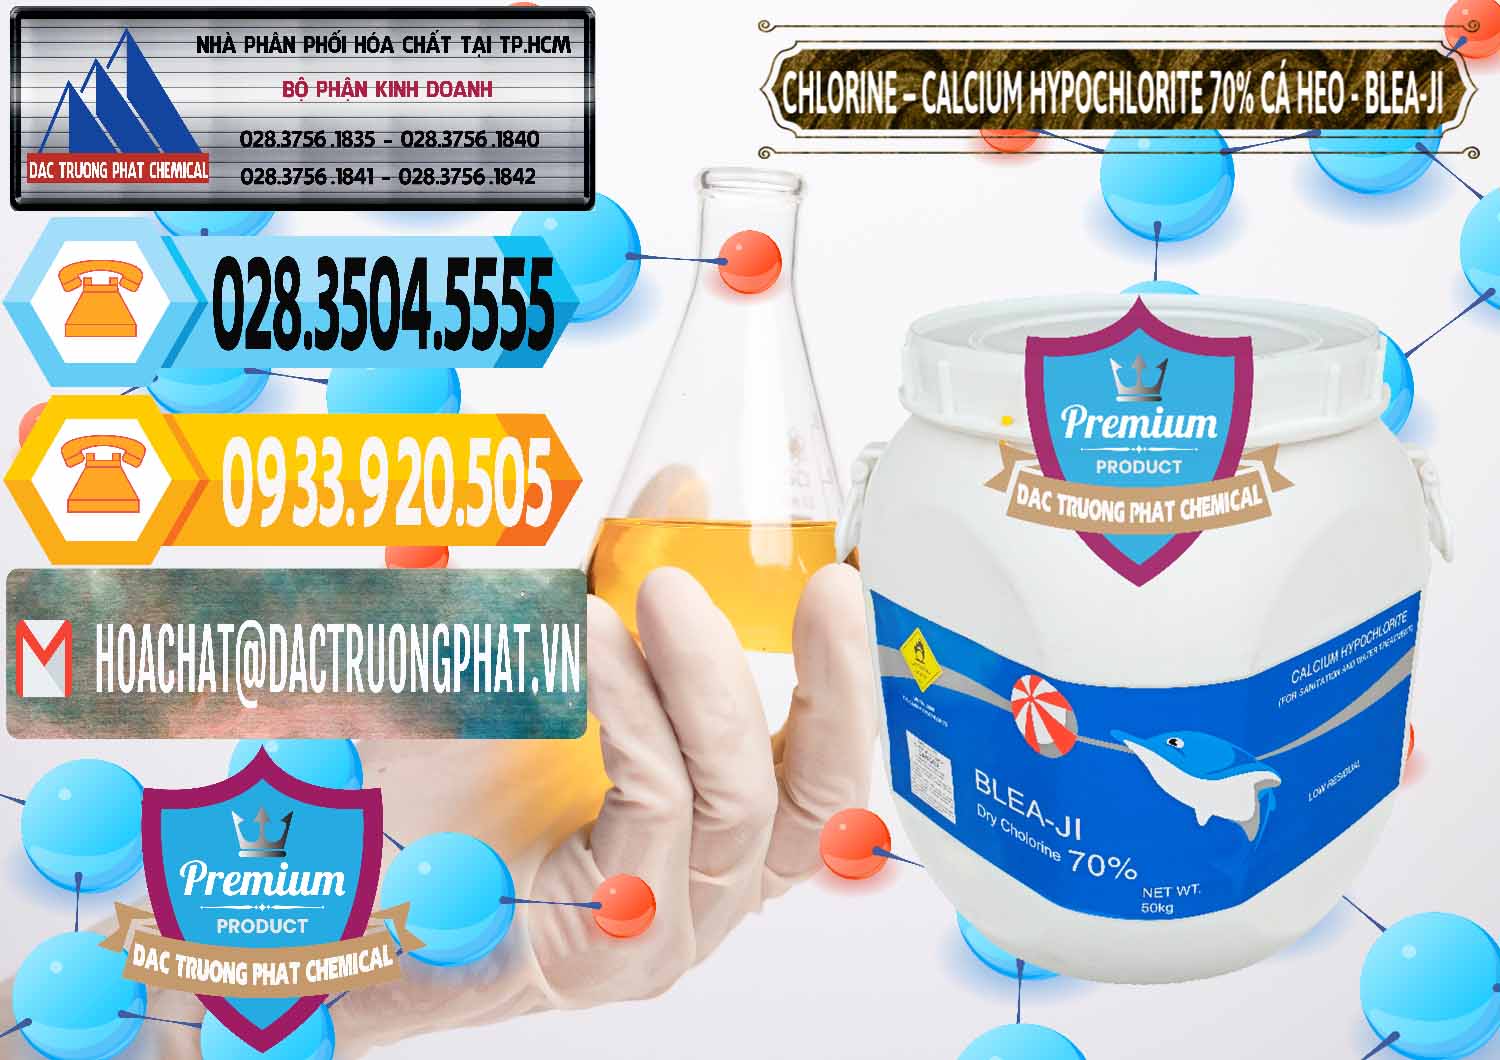 Chuyên bán - cung cấp Clorin - Chlorine Cá Heo 70% Blea-Ji Trung Quốc China - 0056 - Kinh doanh _ cung cấp hóa chất tại TP.HCM - hoachattayrua.net